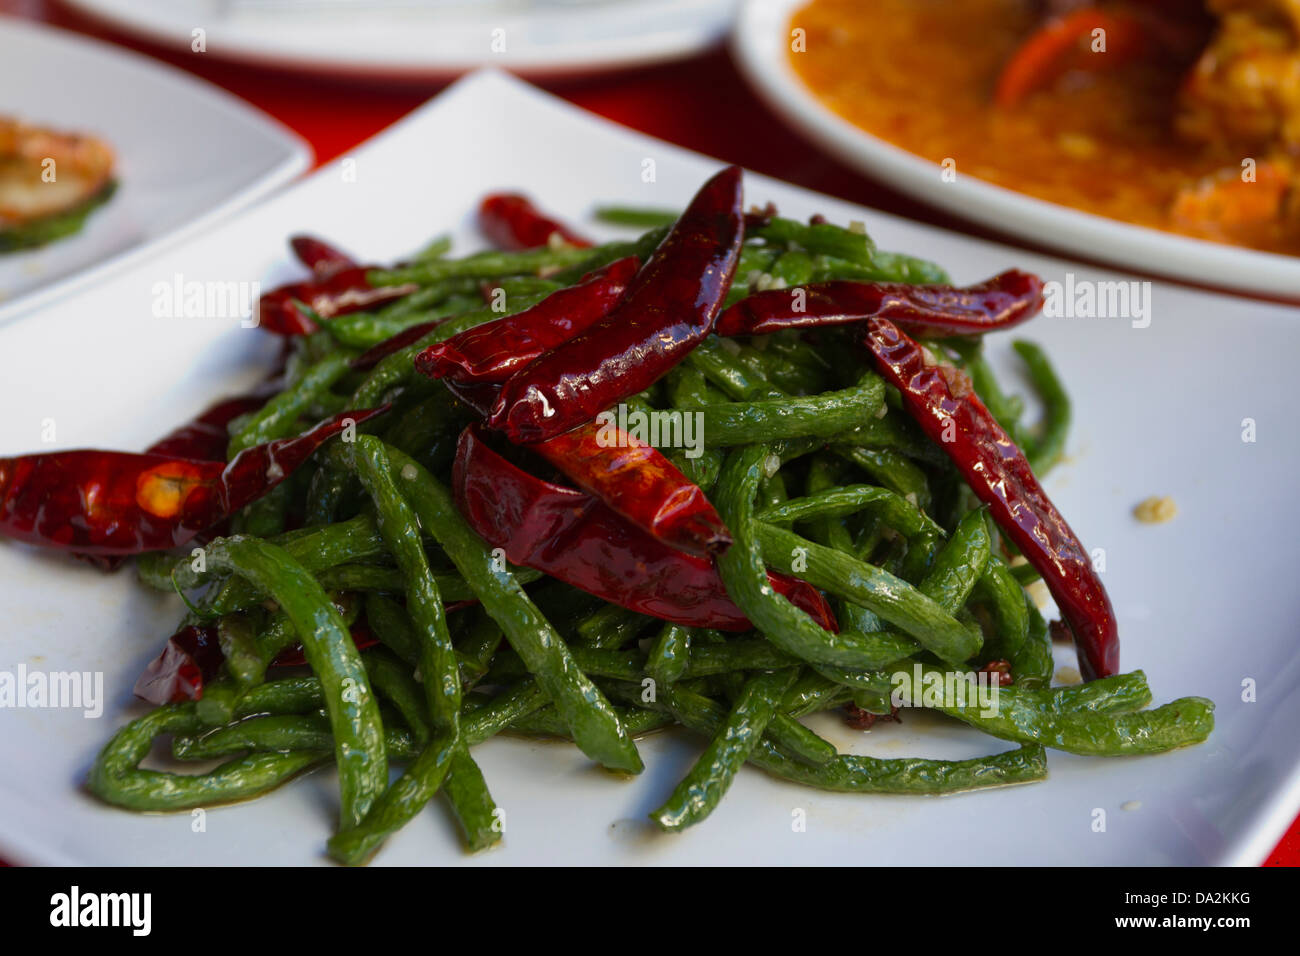 Chinesisches Restaurant, Essen, bestehend aus einer Platte aus langen, grünen Bohnen und getrocknete Chilischoten auf einer Platte, Chinatown, Singapur, Asien Stockfoto